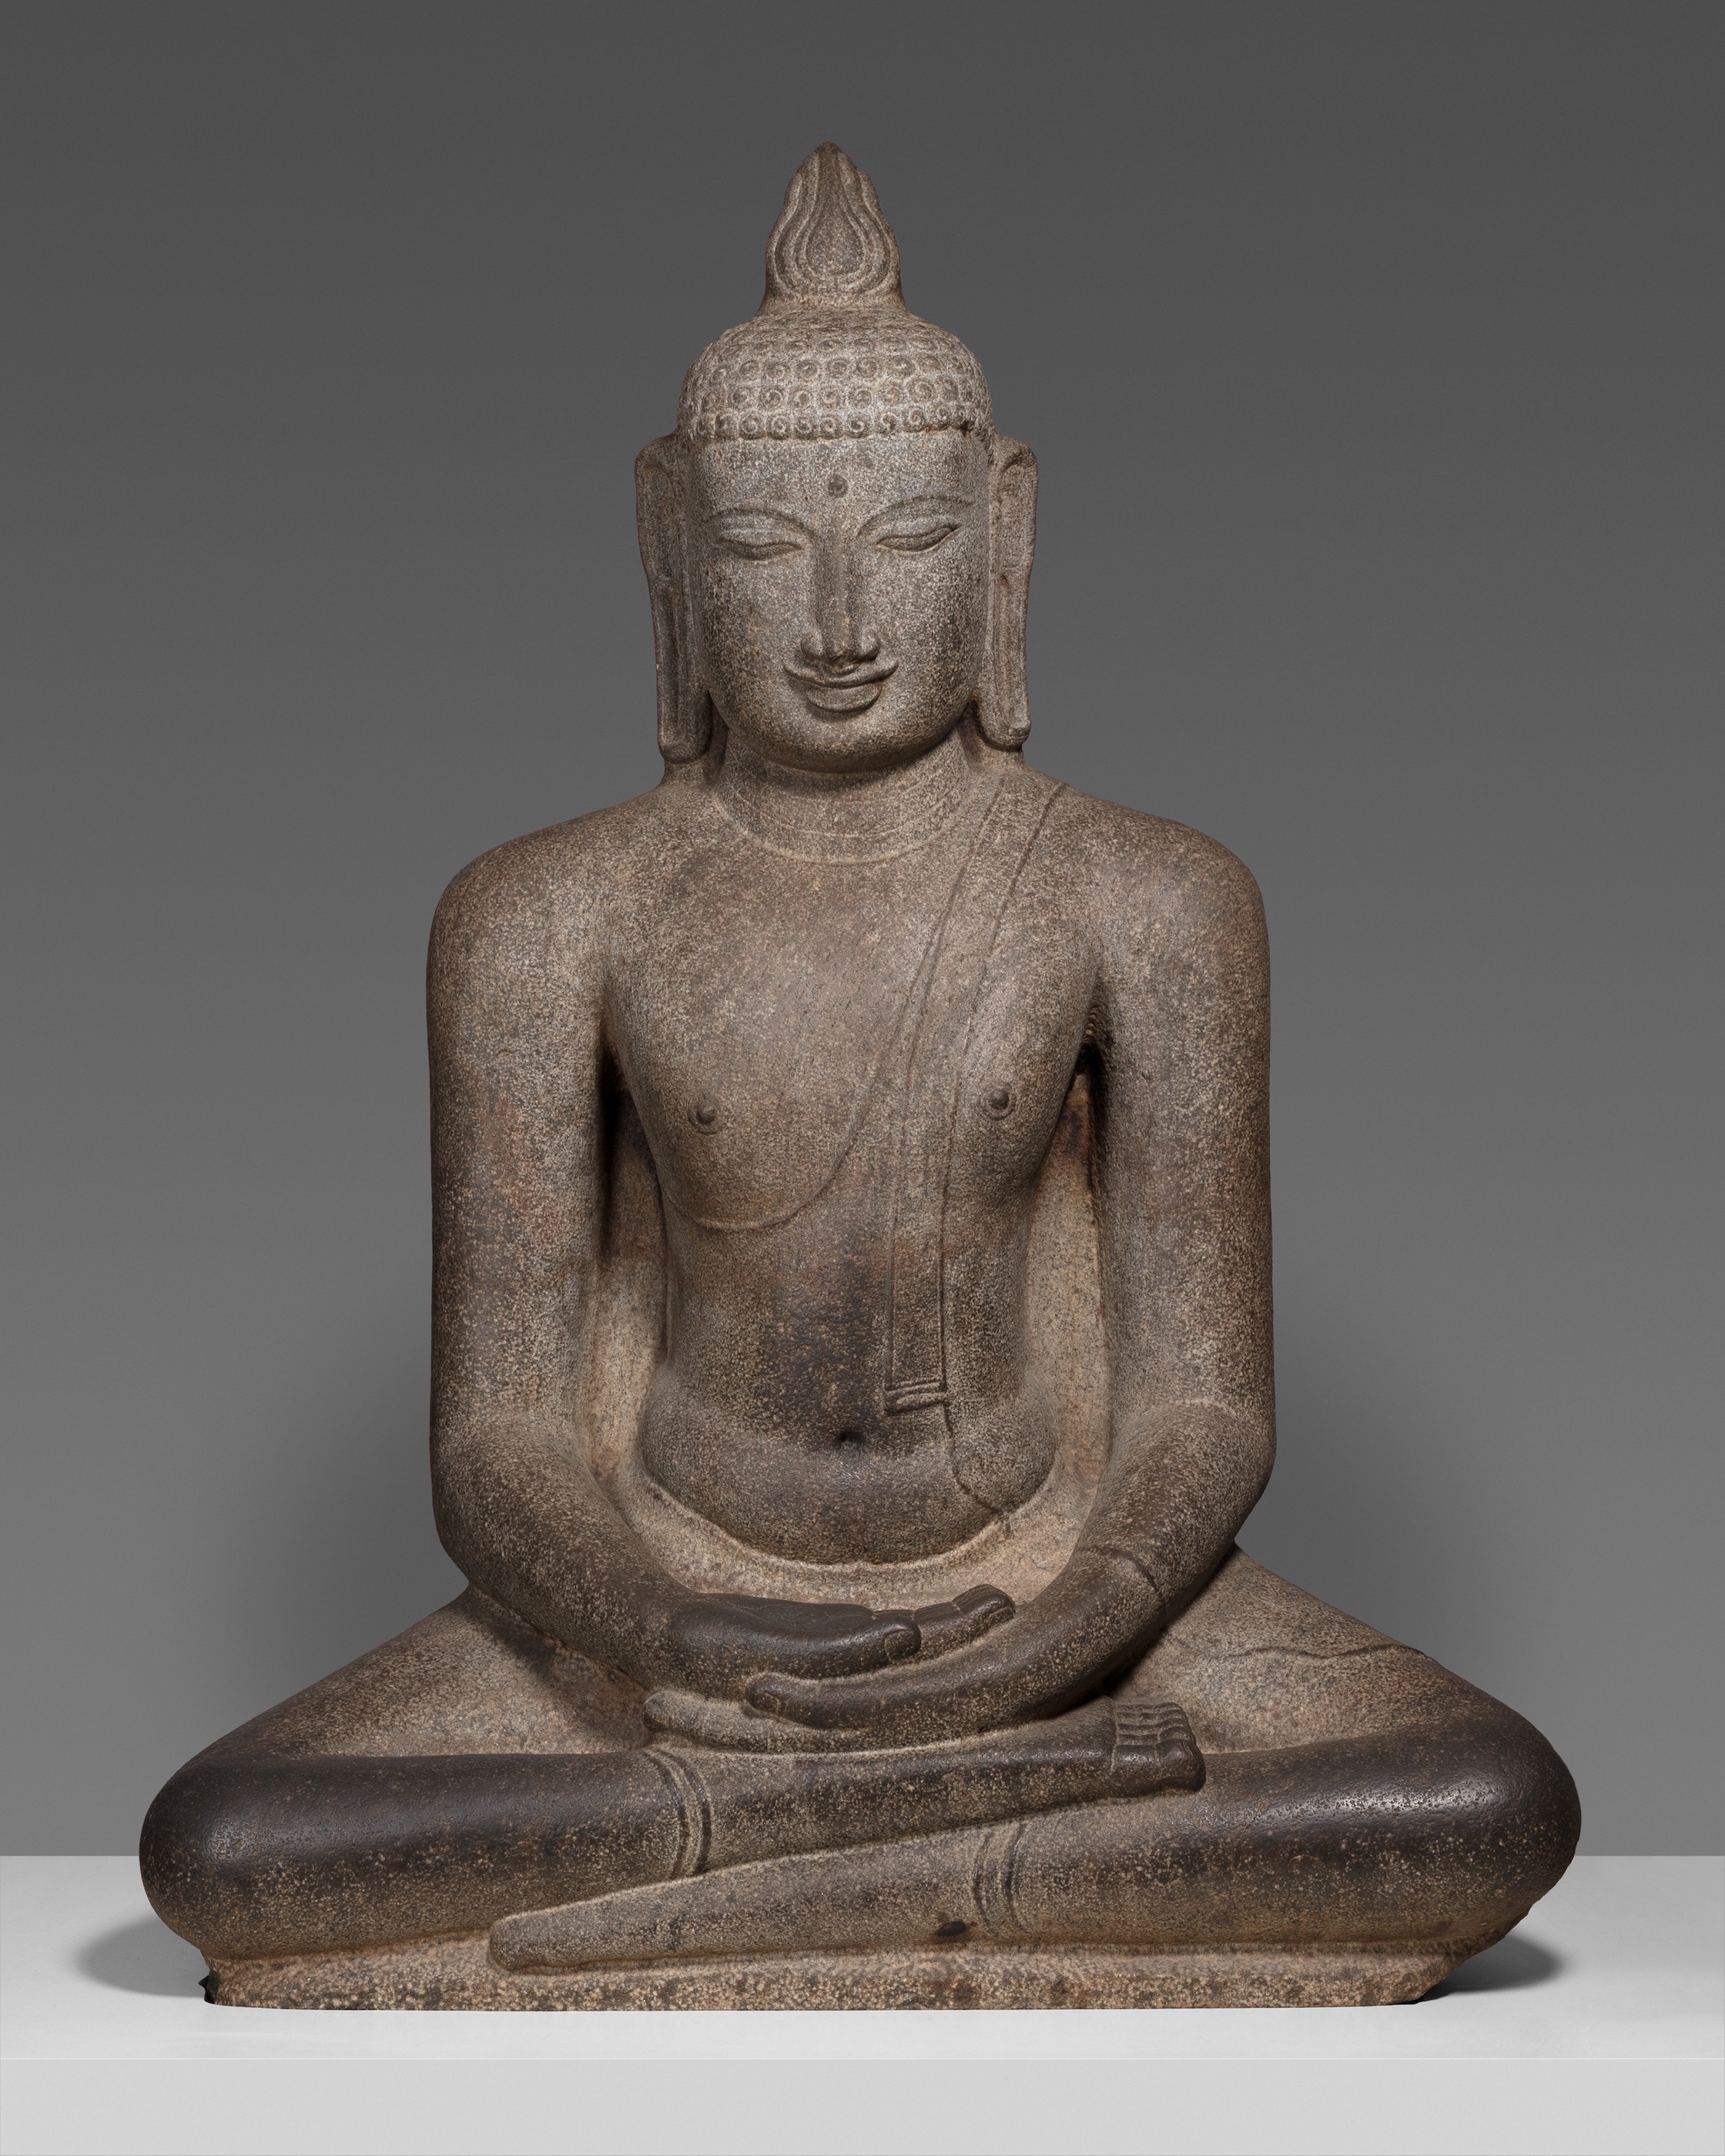 Buda Shakyamuni meditando sentado (Dhyana mudra) by Artista anónimo  - Hacia el siglo XII - 160 x 120,2 x 56,3 cm Instituto de Arte de Chicago